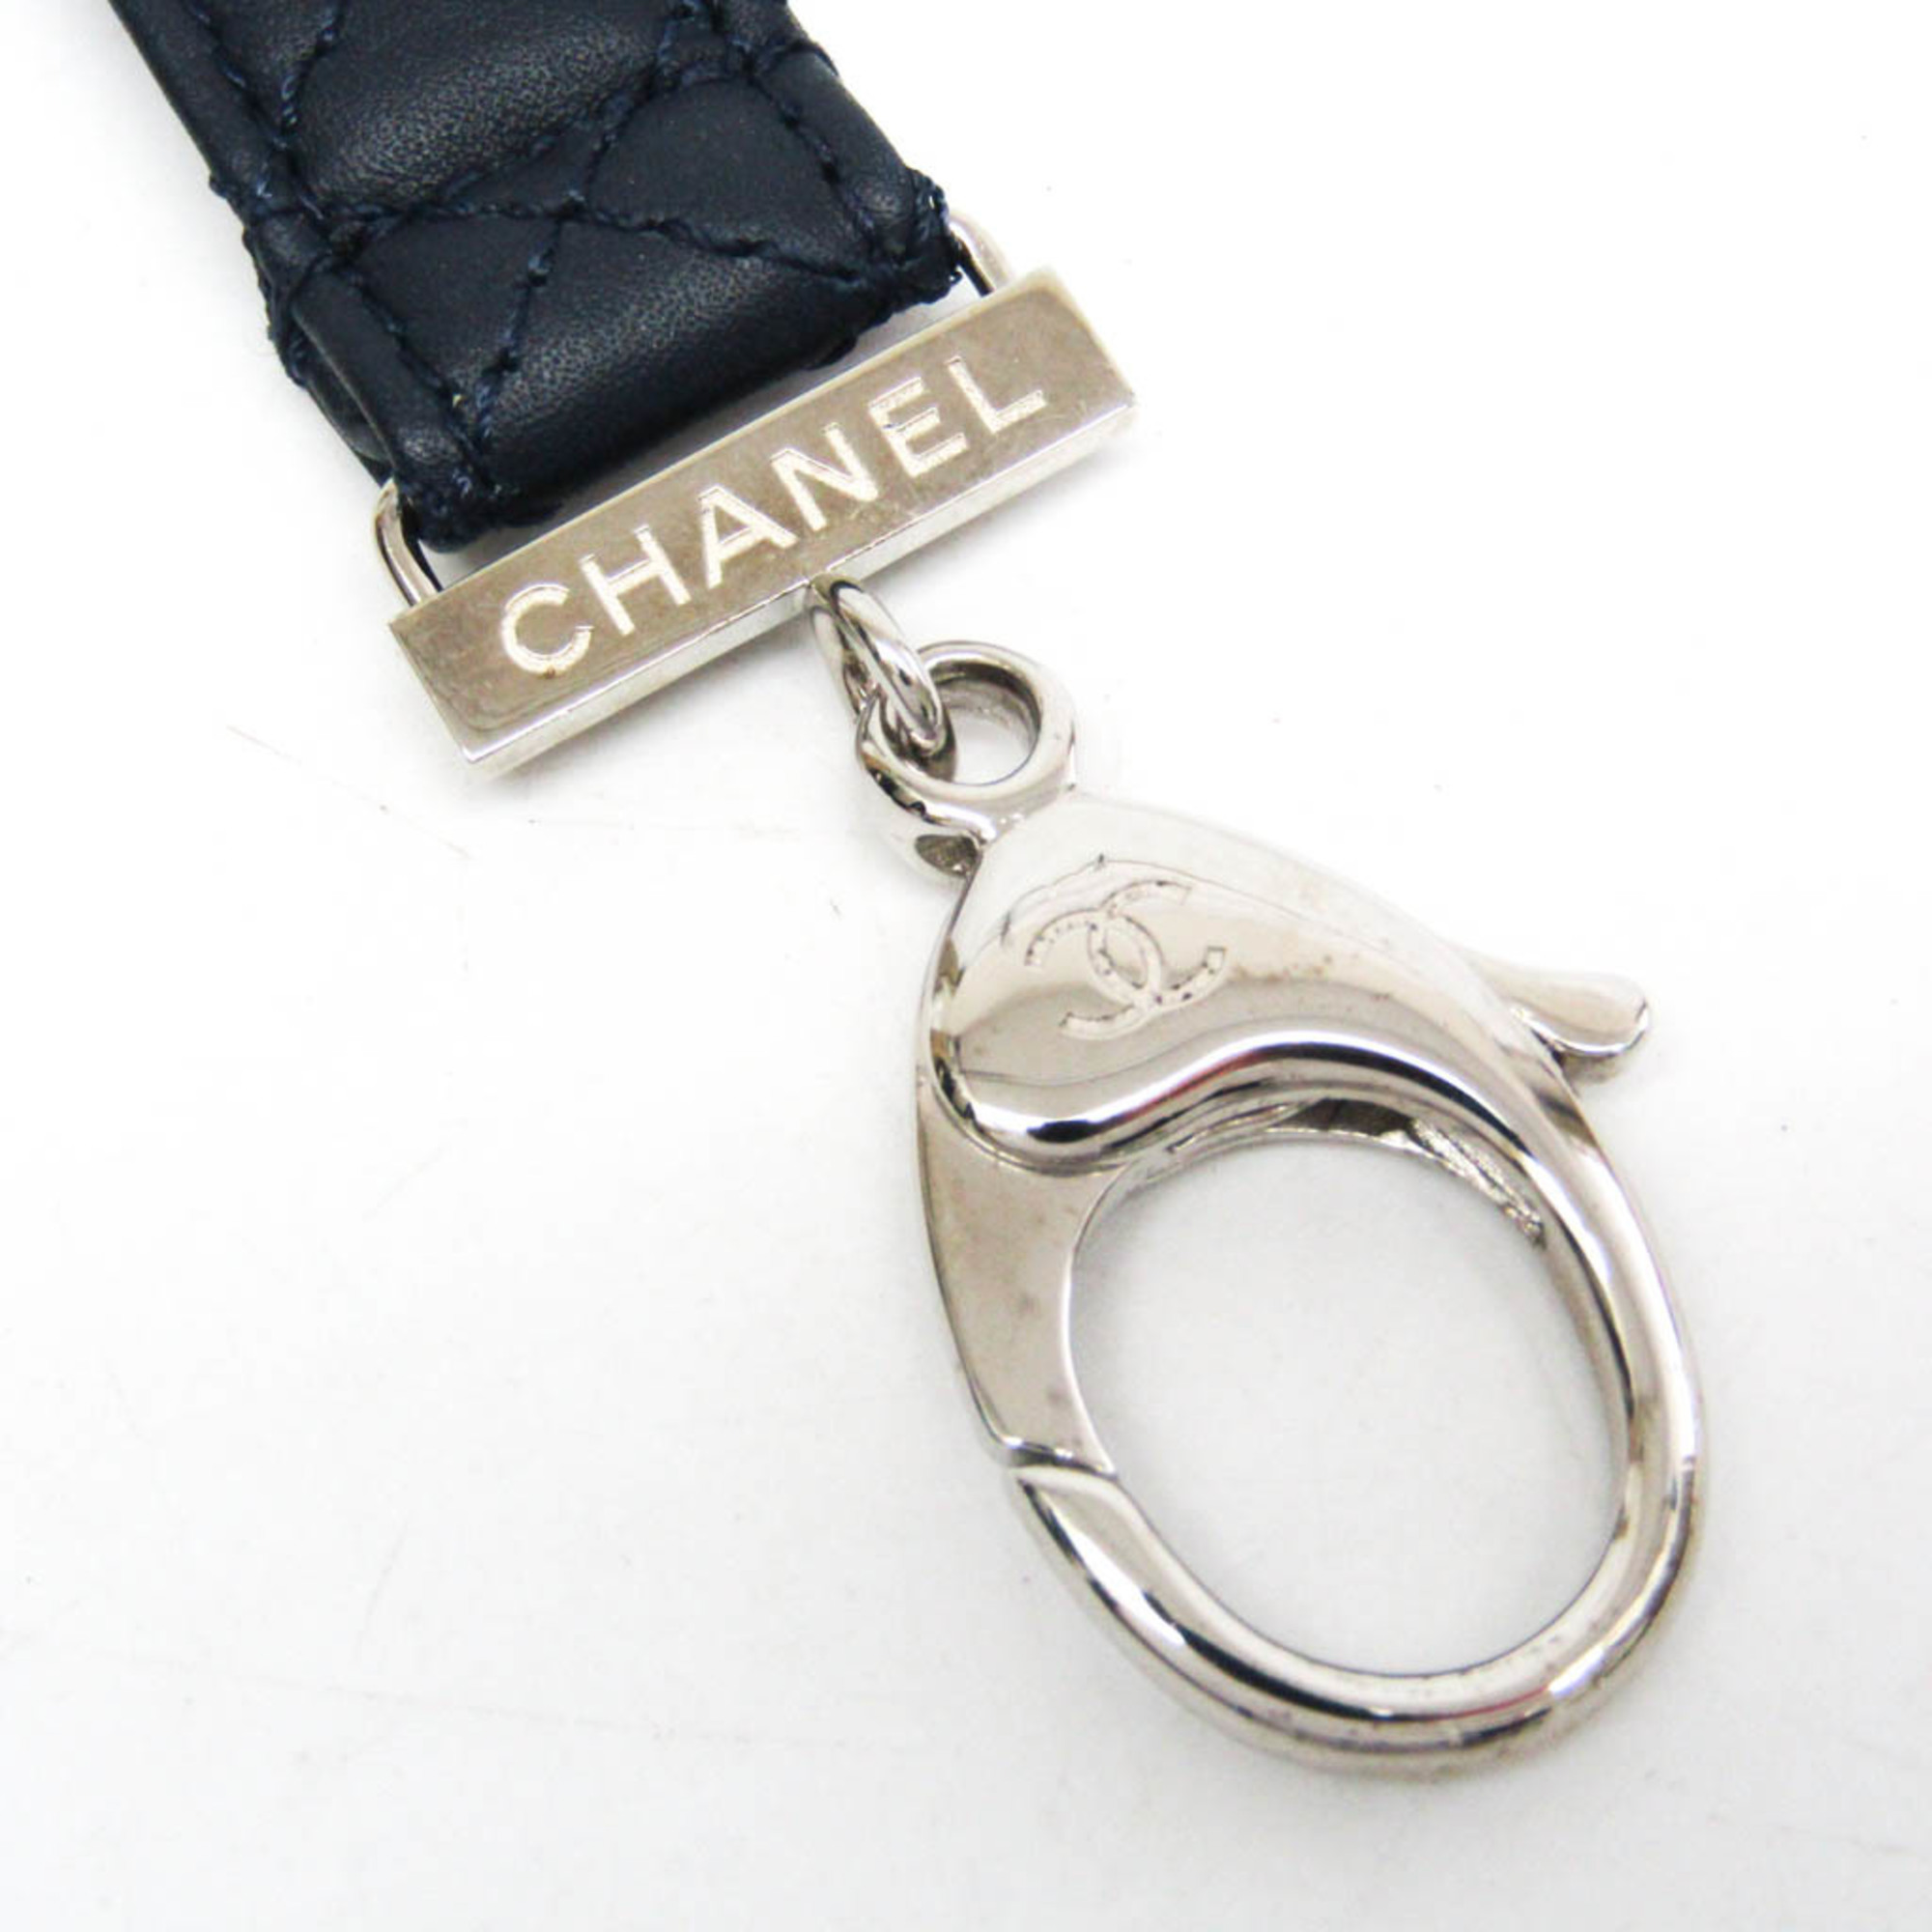 シャネル(Chanel) レザー その他 ネイビー G17S マトラッセ ネックストラップ C96612